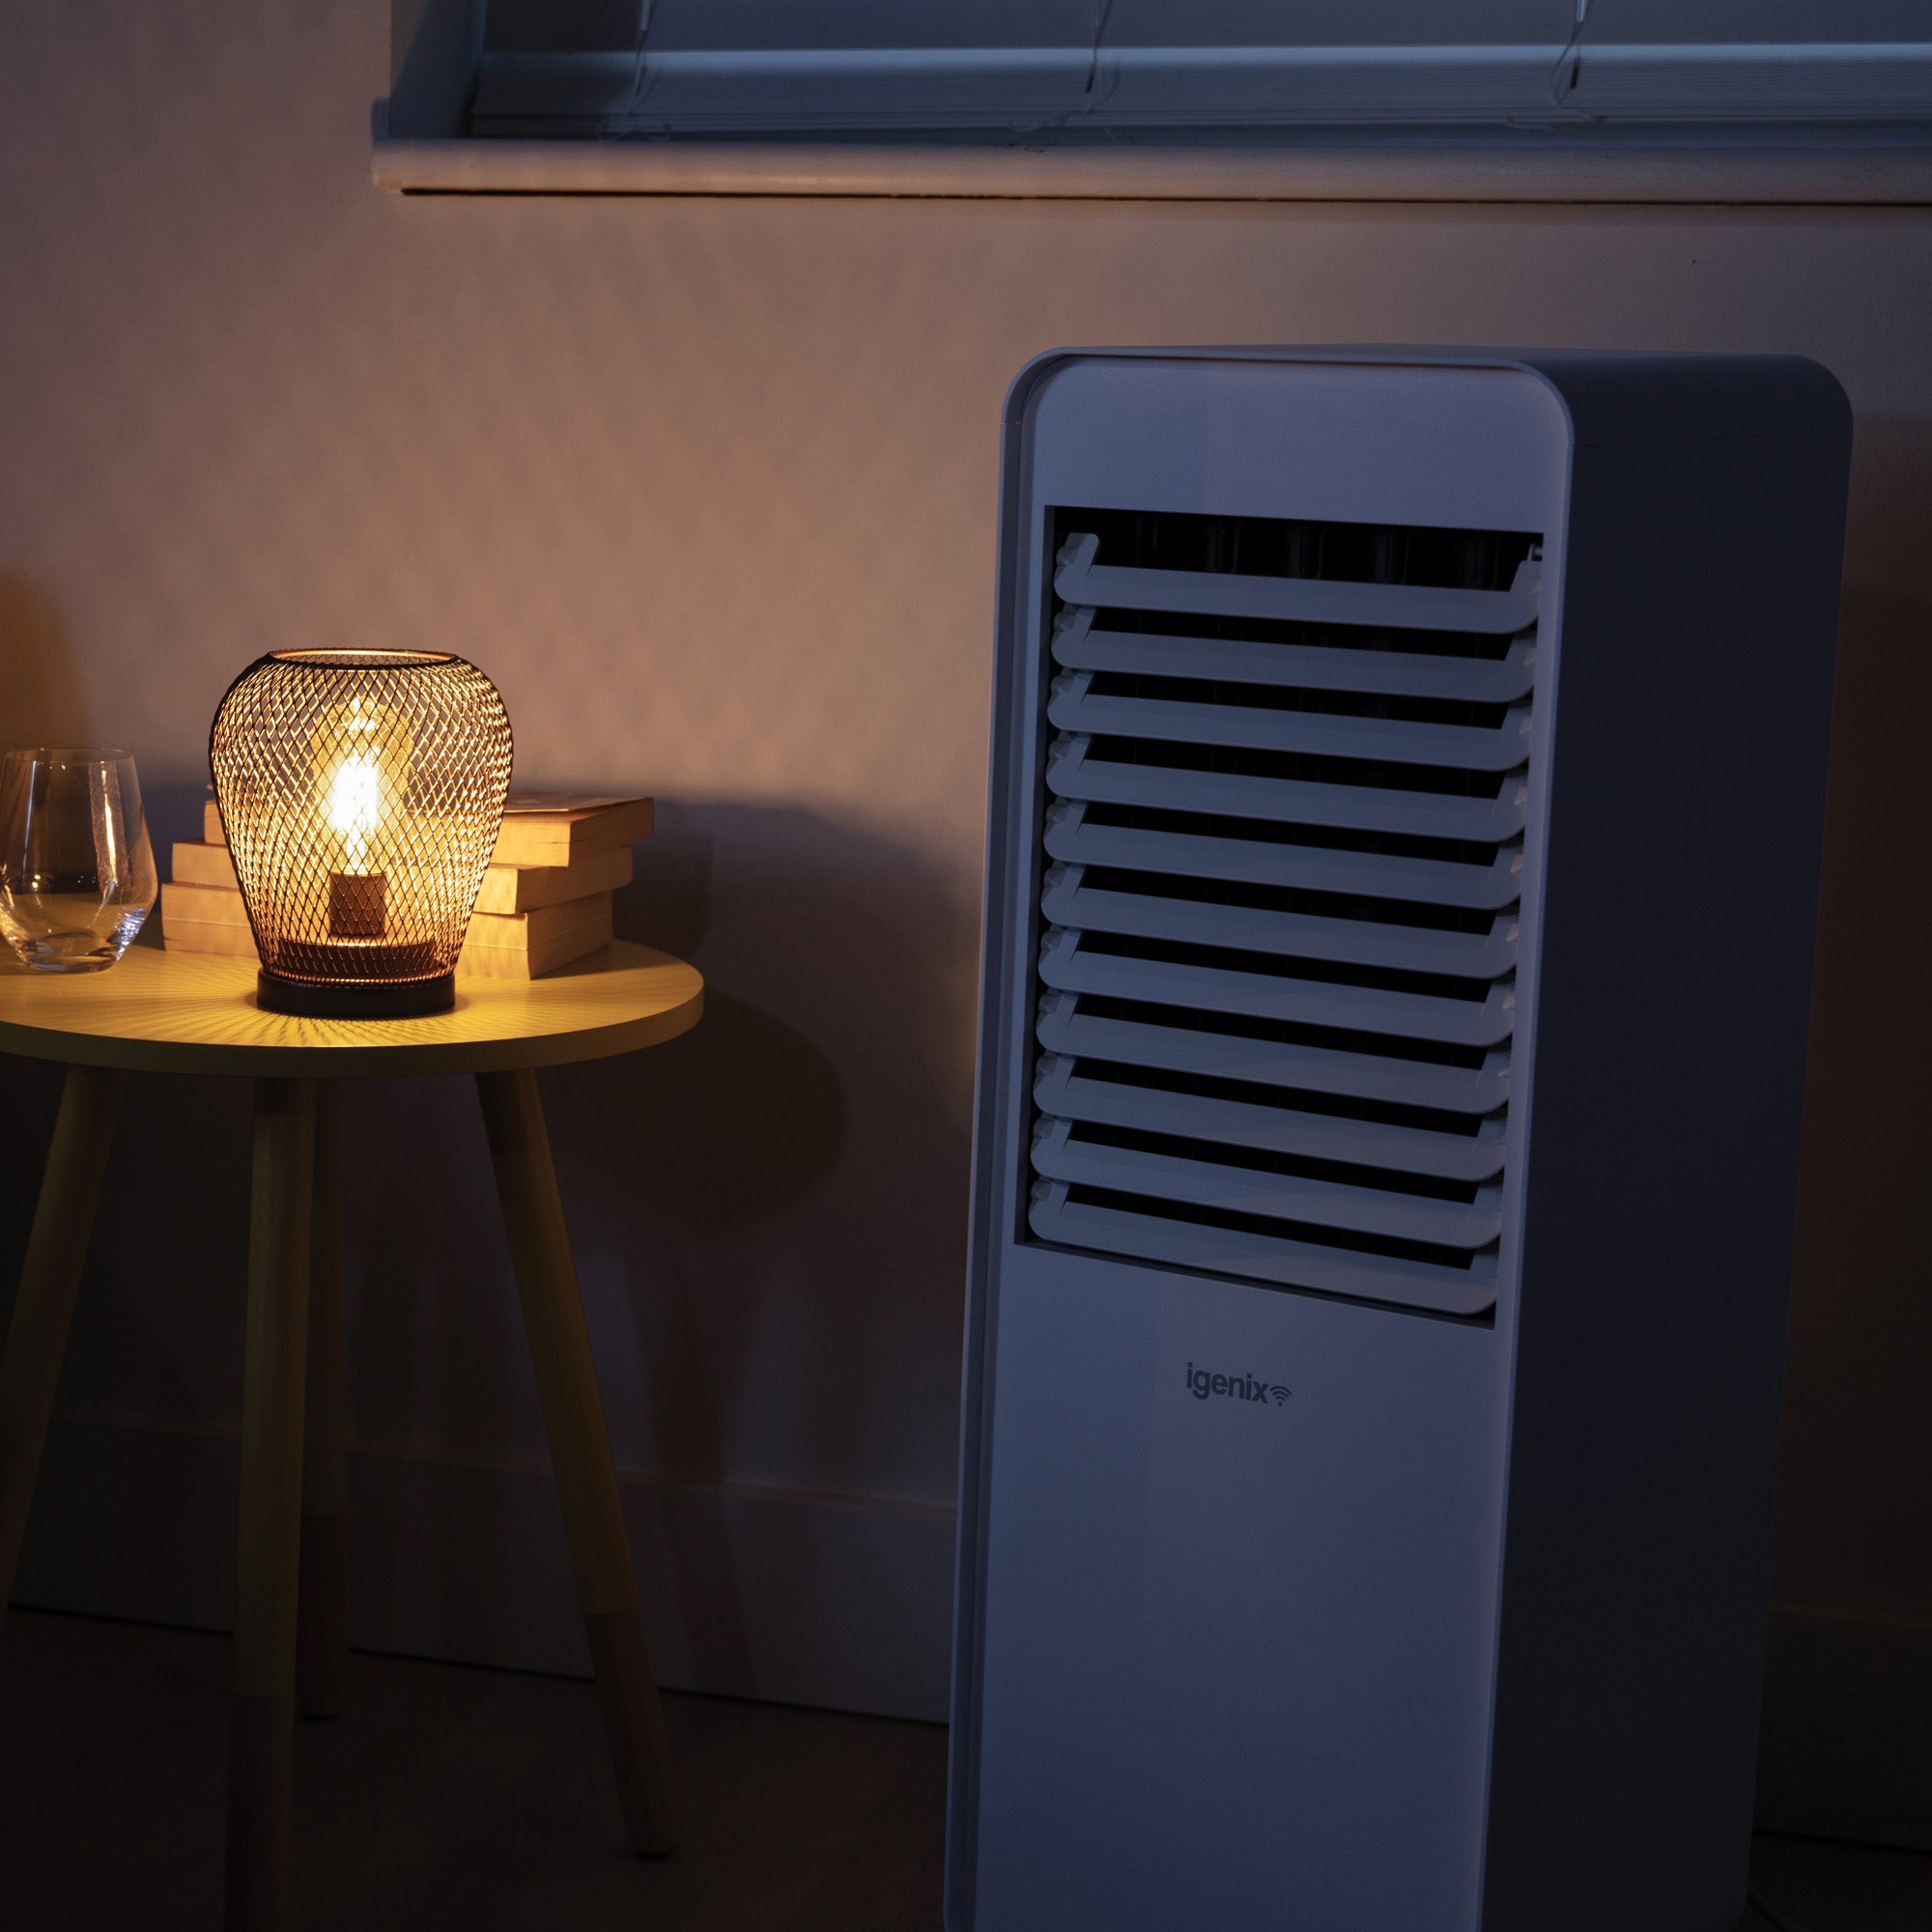 Smart Digital Air Cooler, 10 Litres, 3 Fan Speeds